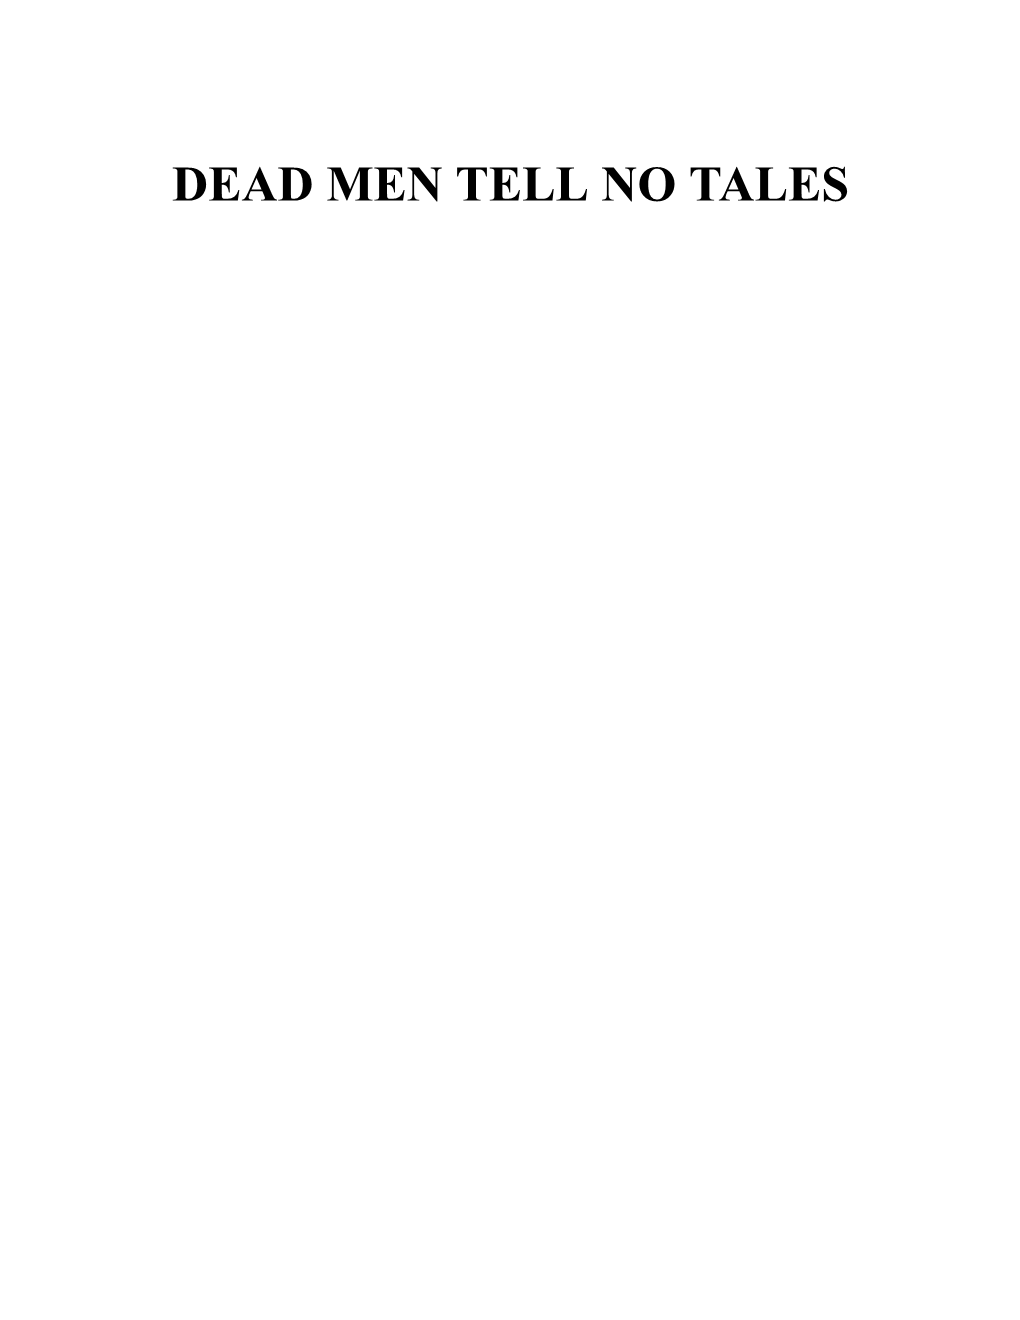 DEAD MEN TELL NO TALES by E